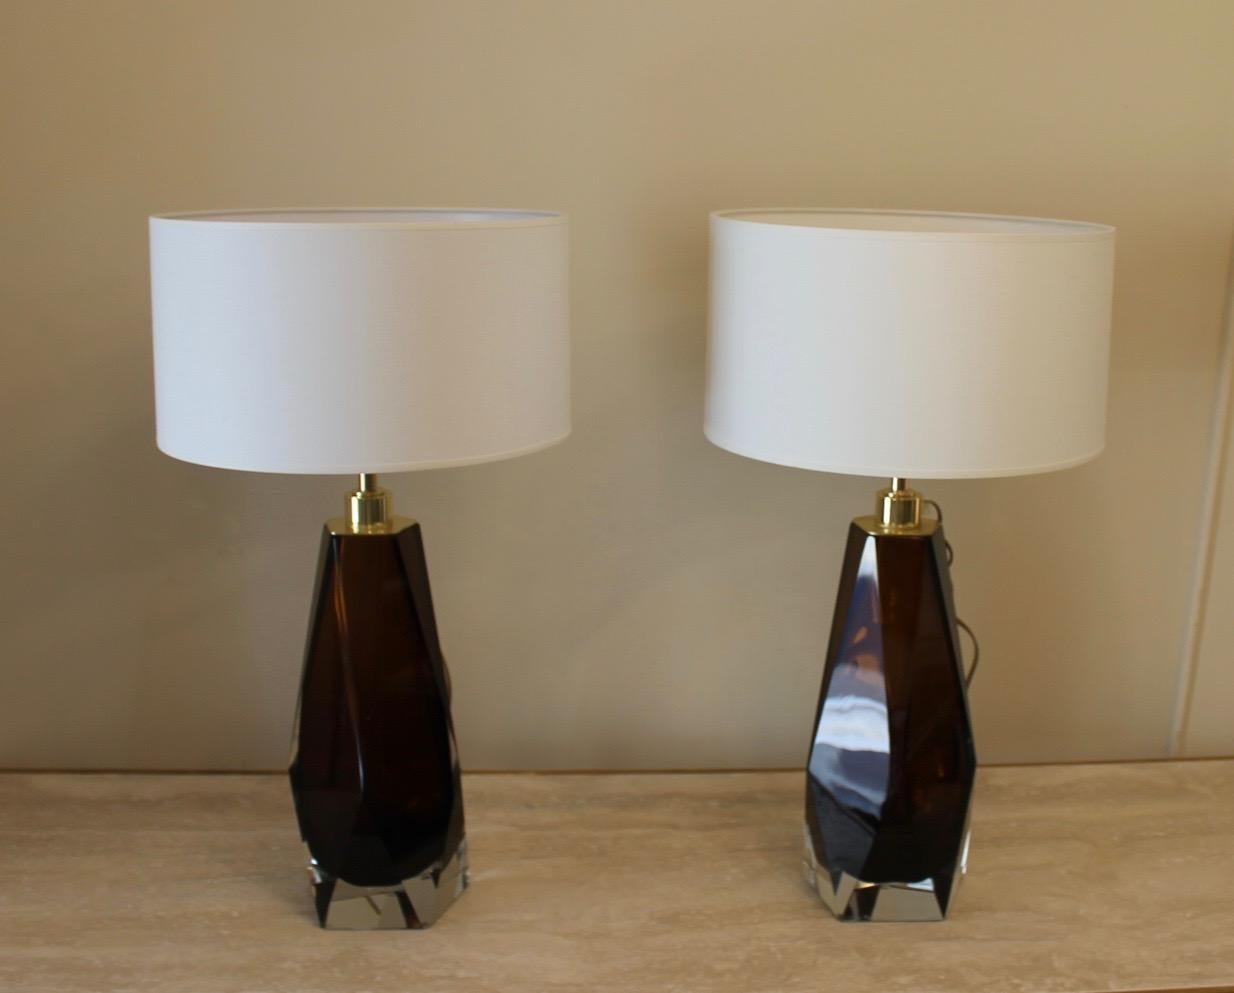 Paar rauchbraune Lampen, Murano, Messingstruktur, Modern, mit Lampenschirm.
Die Lampen sind mit Toso Murano signiert.